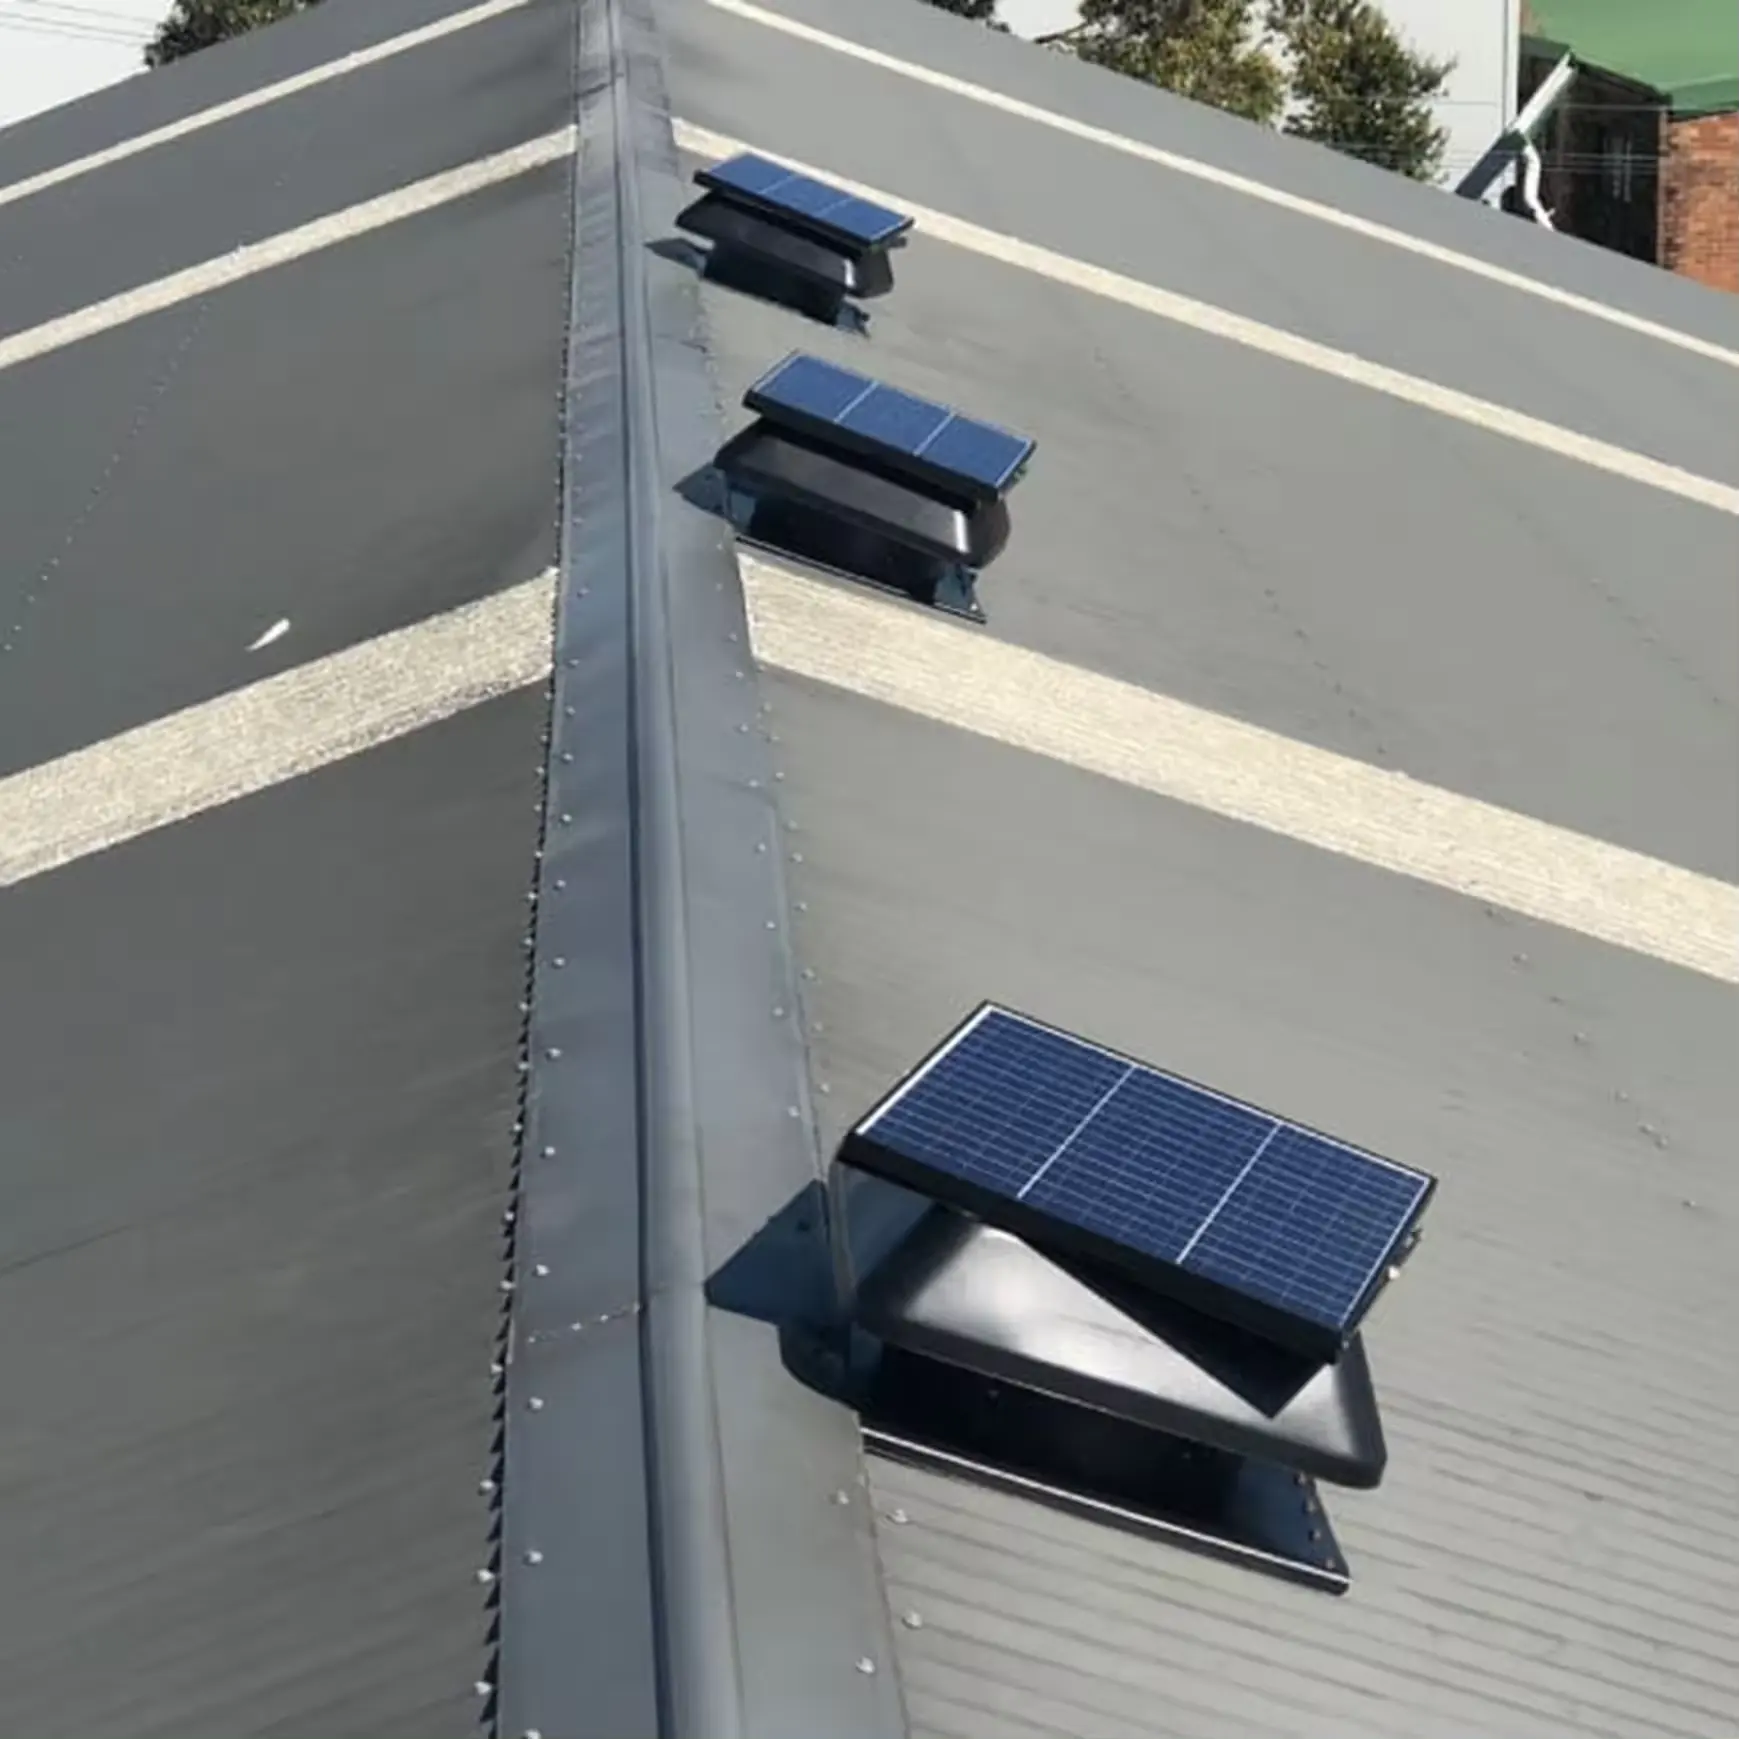 Ventilador industrial para telhado industrial com painel solar de 50 W, exaustor de energia solar híbrido inteligente, produto relacionado com ventilação, ventilador de teto